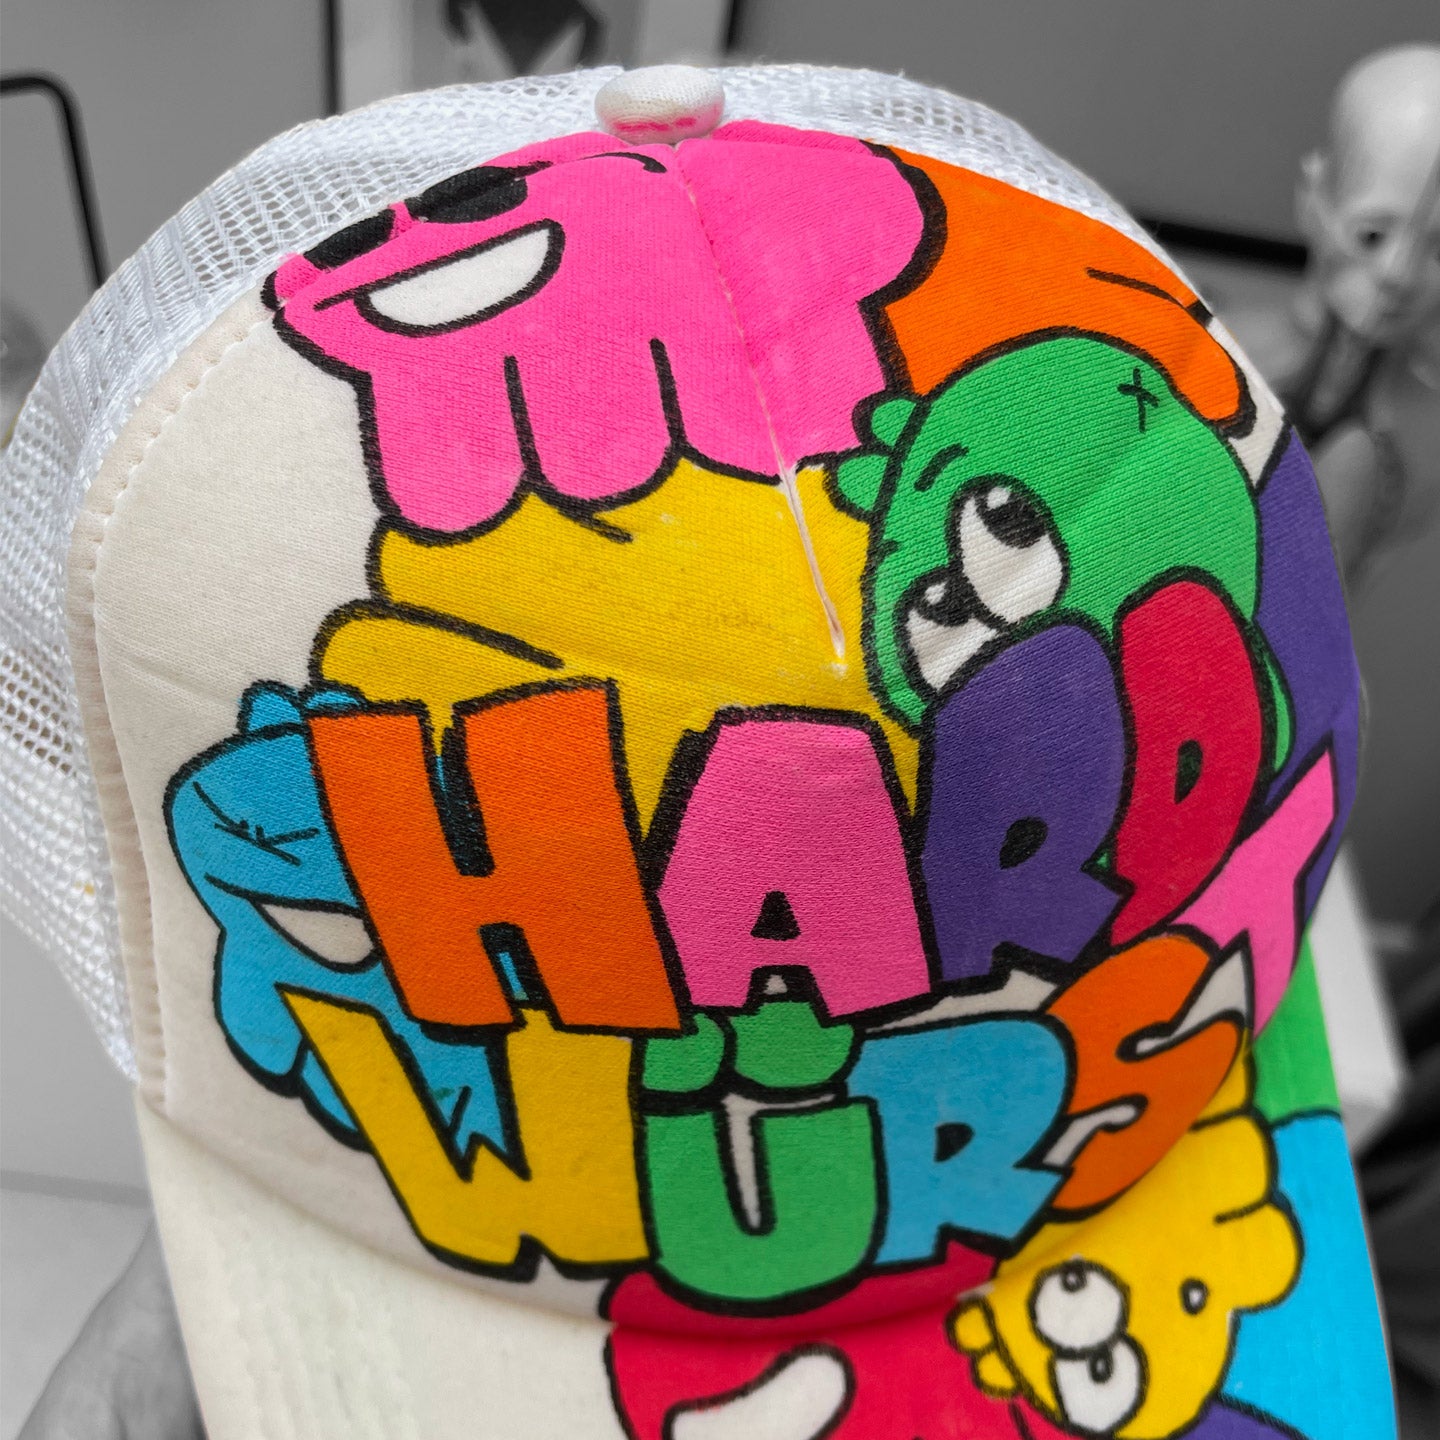 the Hardwürst cap